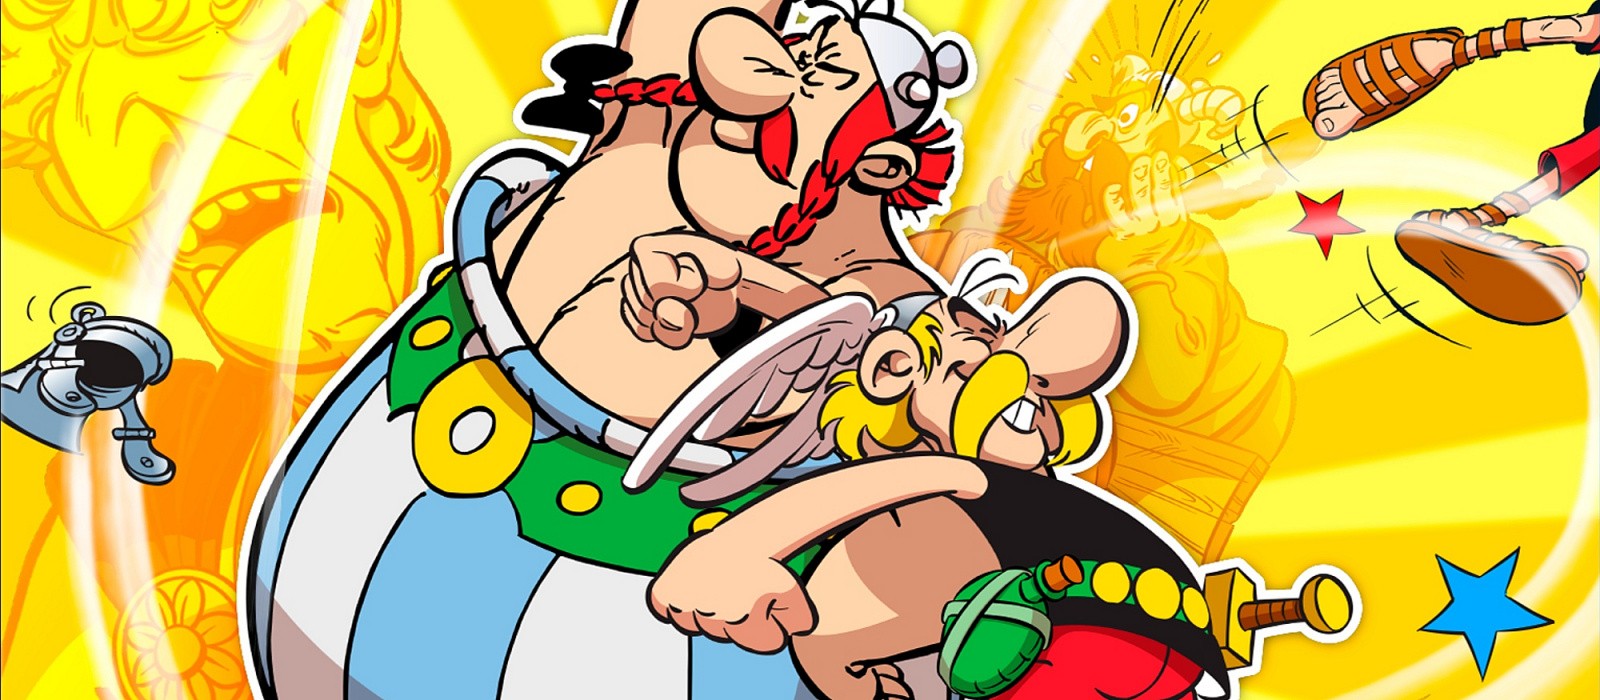 
 Обзор Asterix & Obelix: Slap them All! Яркий праздник ностальгии, который понравится далеко не всем
 